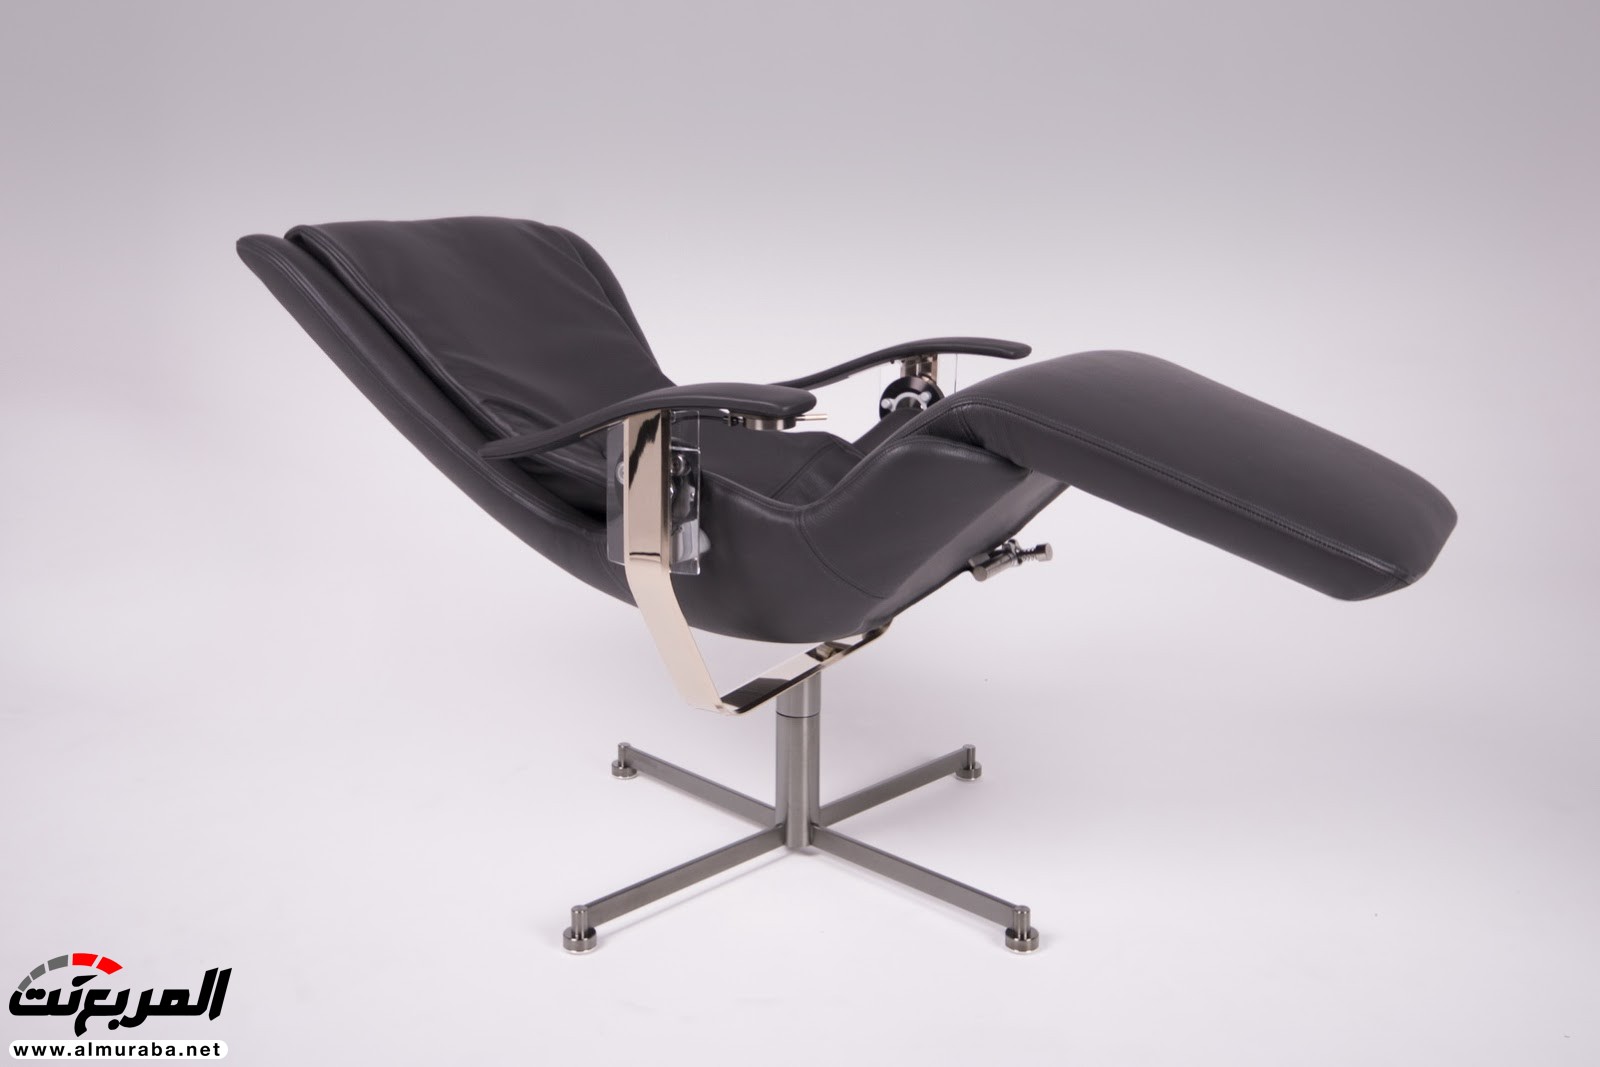 تعرف على مواصفات وسعر أغلى كرسي في العالم من شركة رولزرويس 37